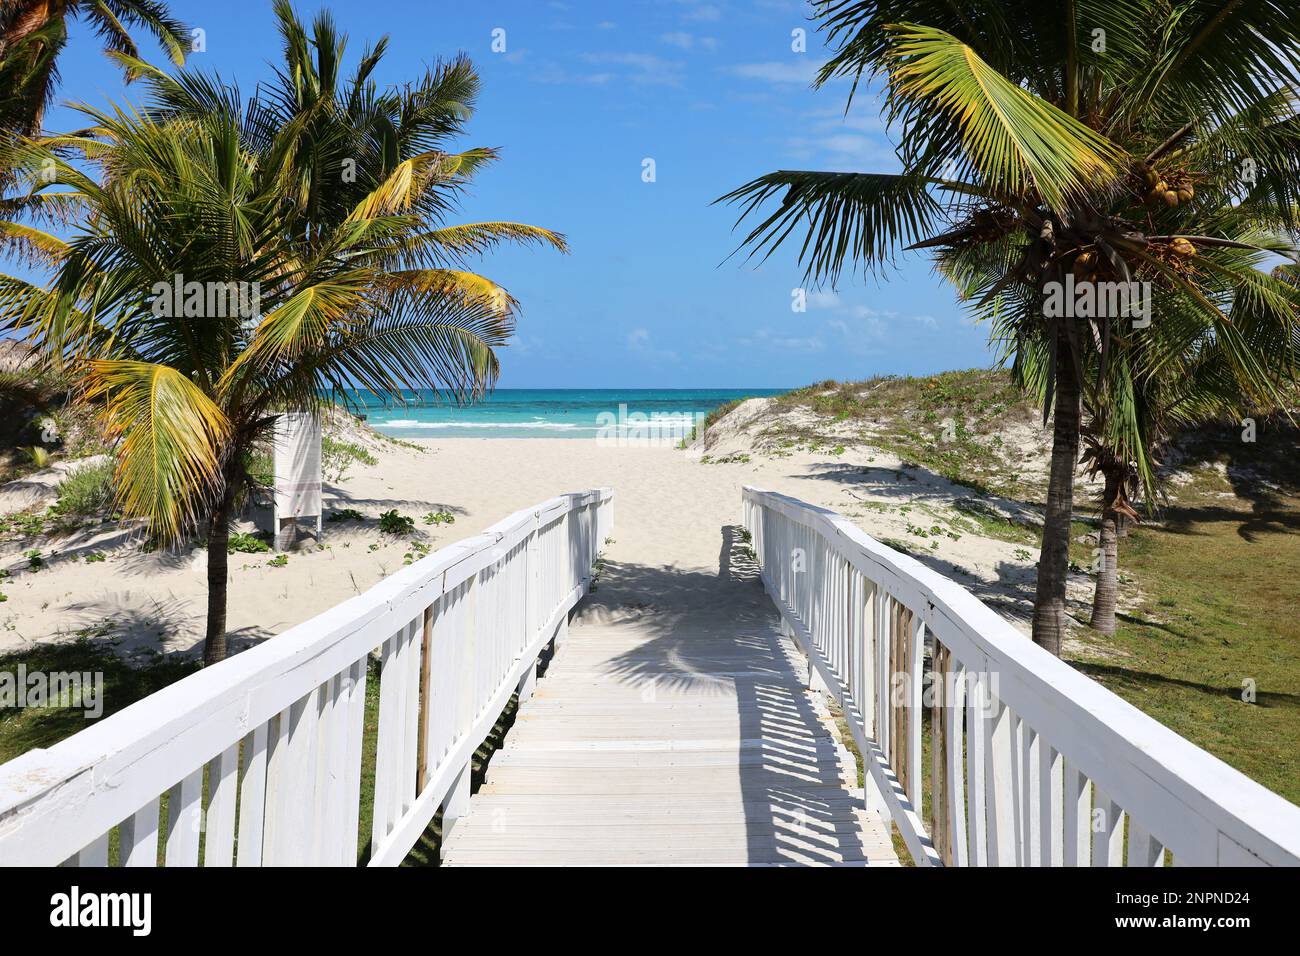 Vue pittoresque sur la plage tropicale avec sable blanc et palmiers à noix de coco. Chemin en bois vers la côte océanique, station touristique sur l'île des Caraïbes Banque D'Images